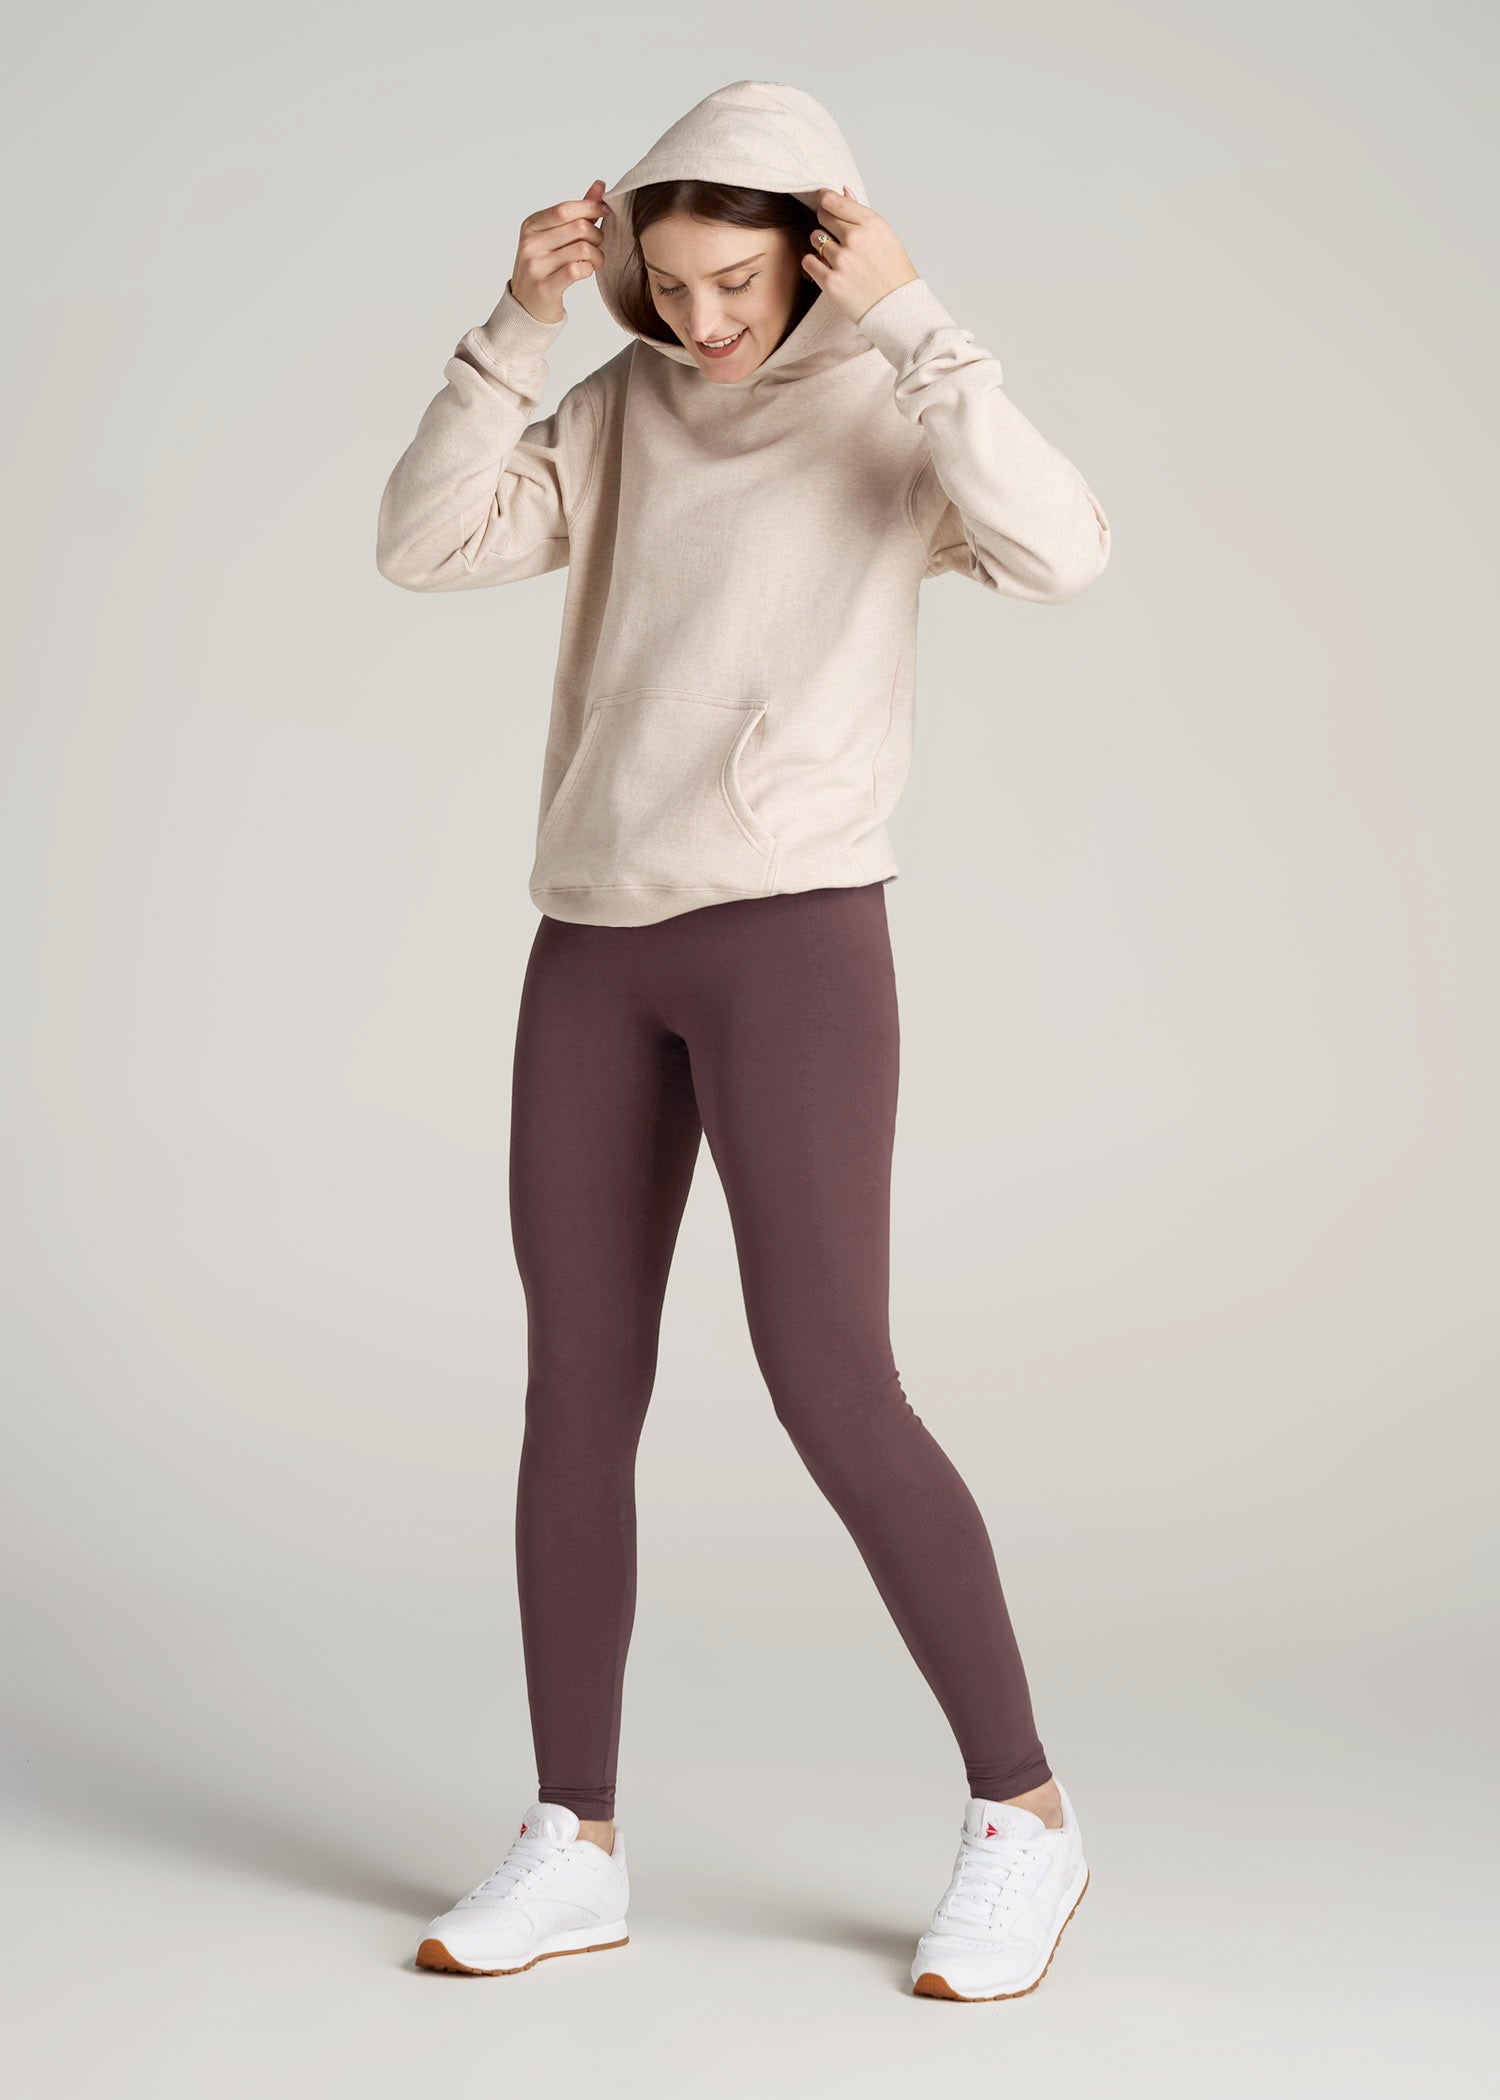 Women's Tall Cotton Leggings in Dusty Merlot